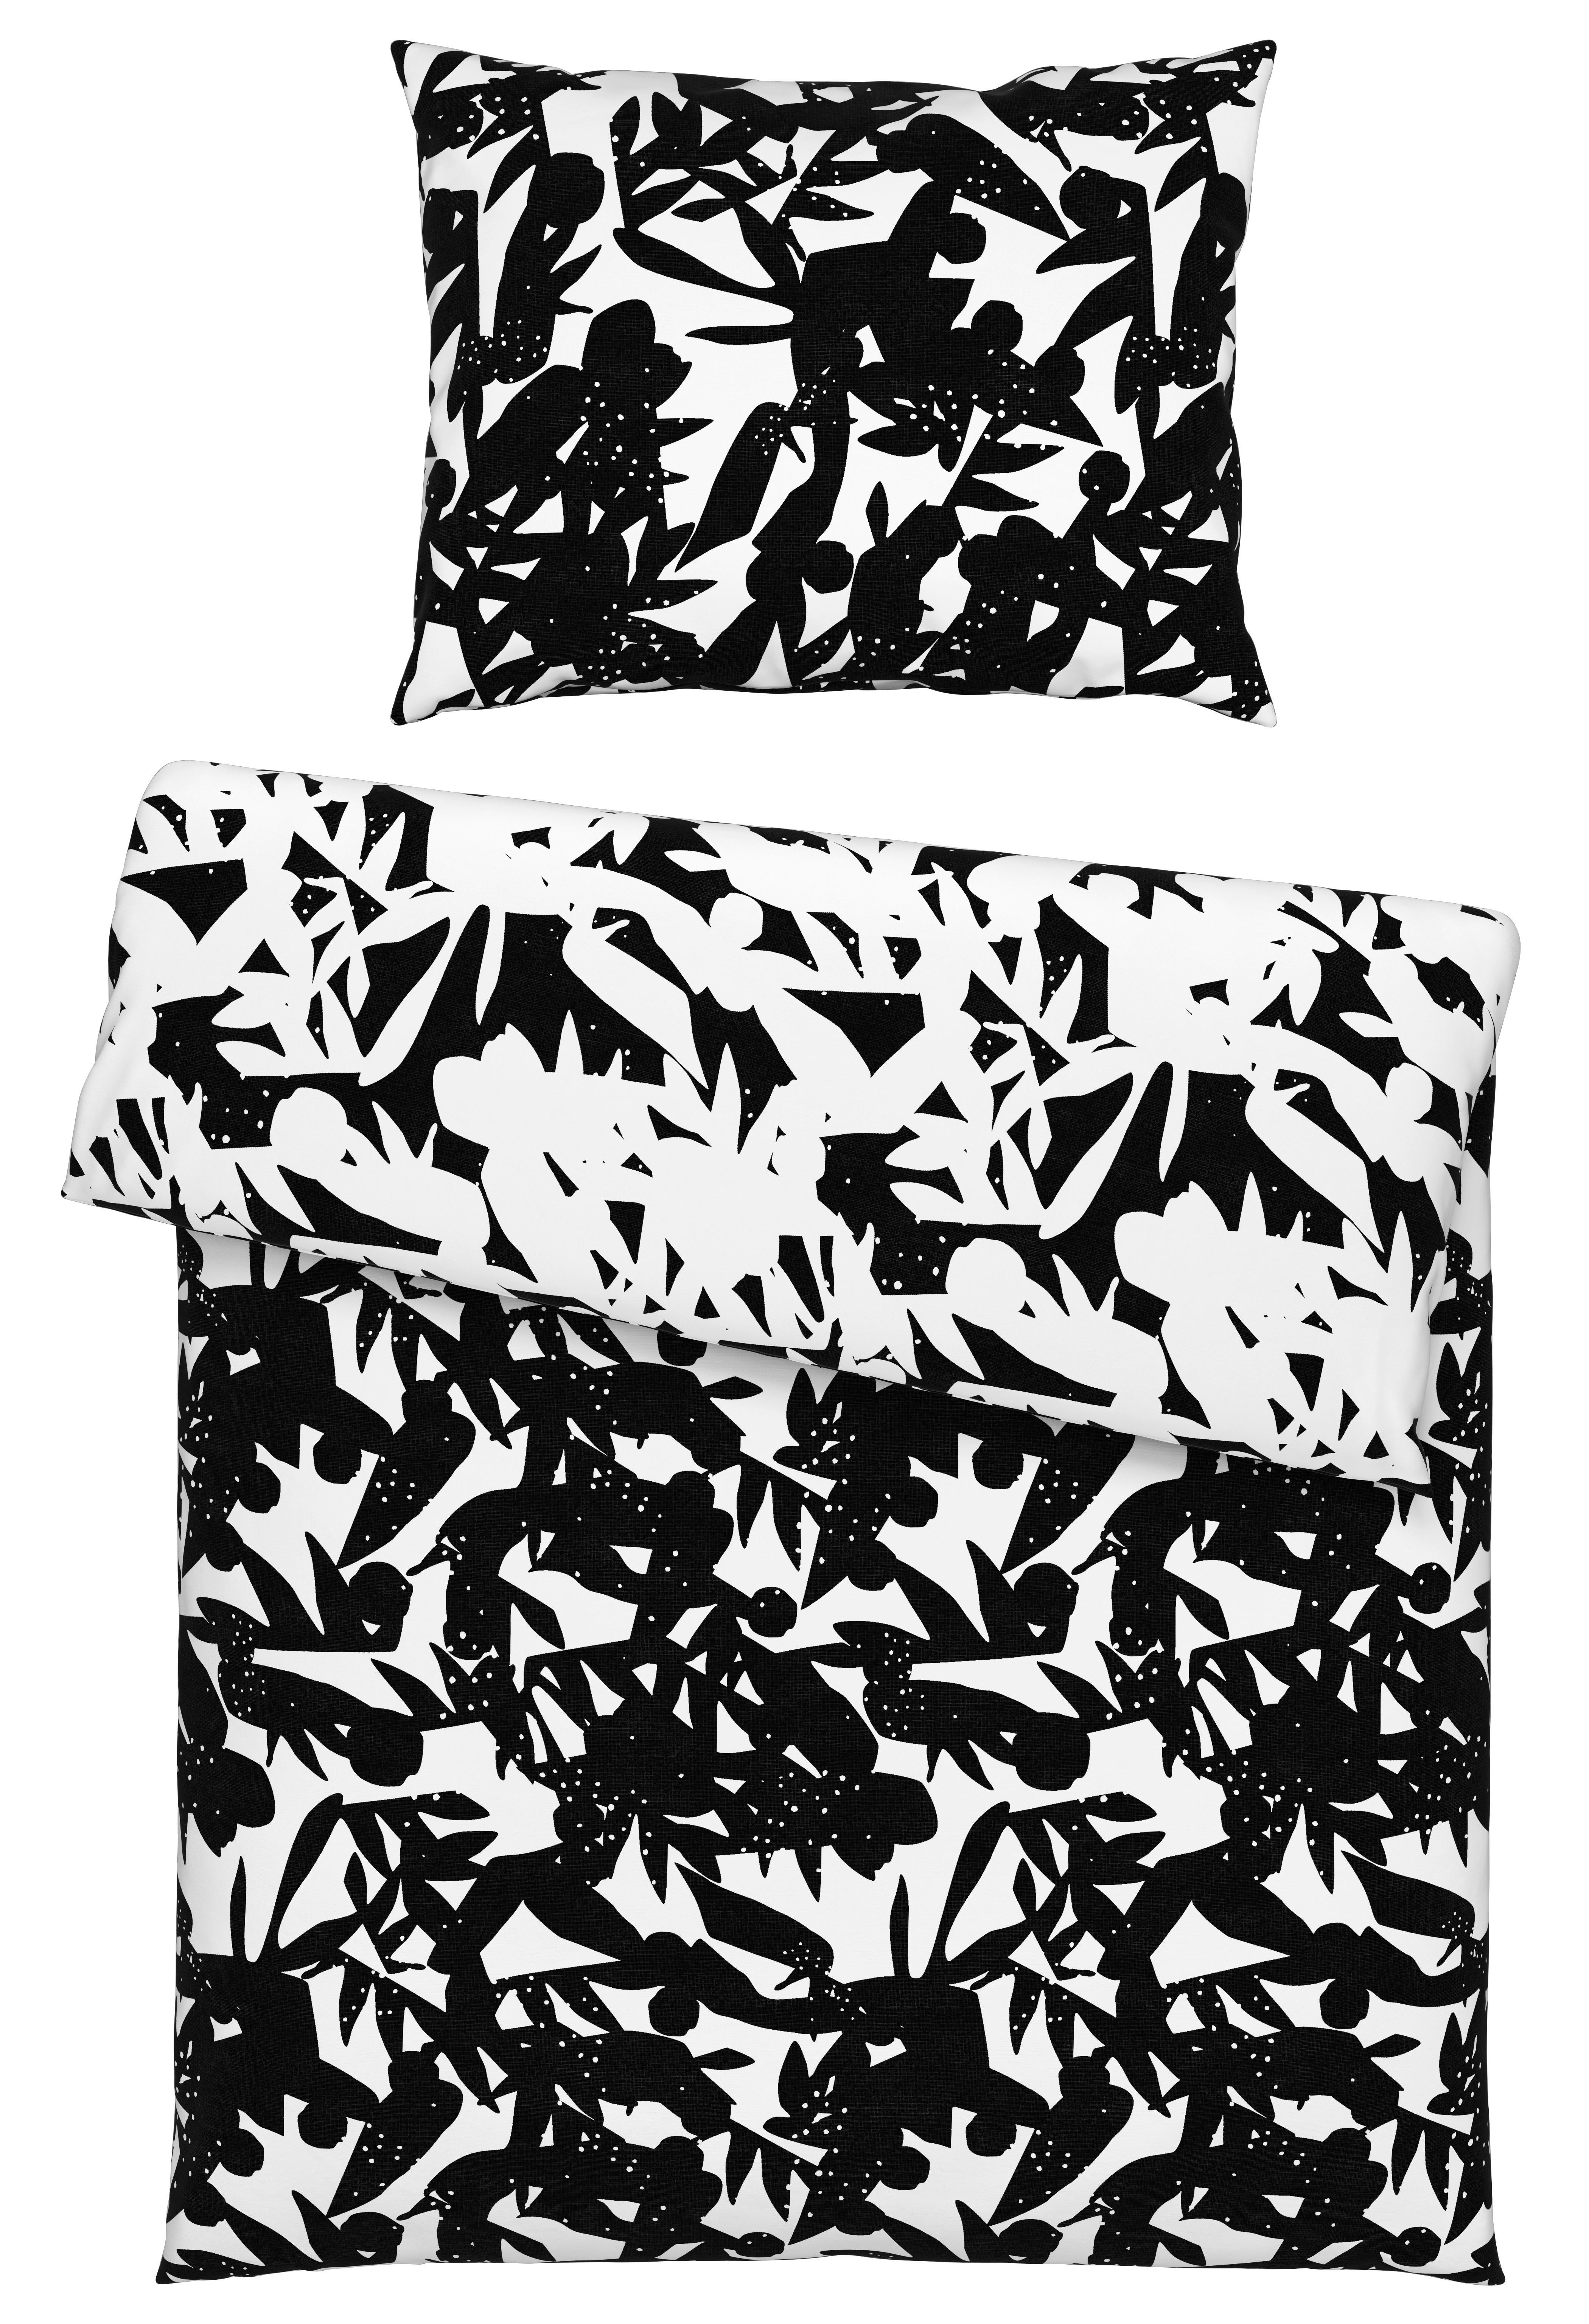 Oboustranné Povlečení Abstract Wende, 140/200cm - bílá/černá, Konvenční, textil (140/200cm) - Based